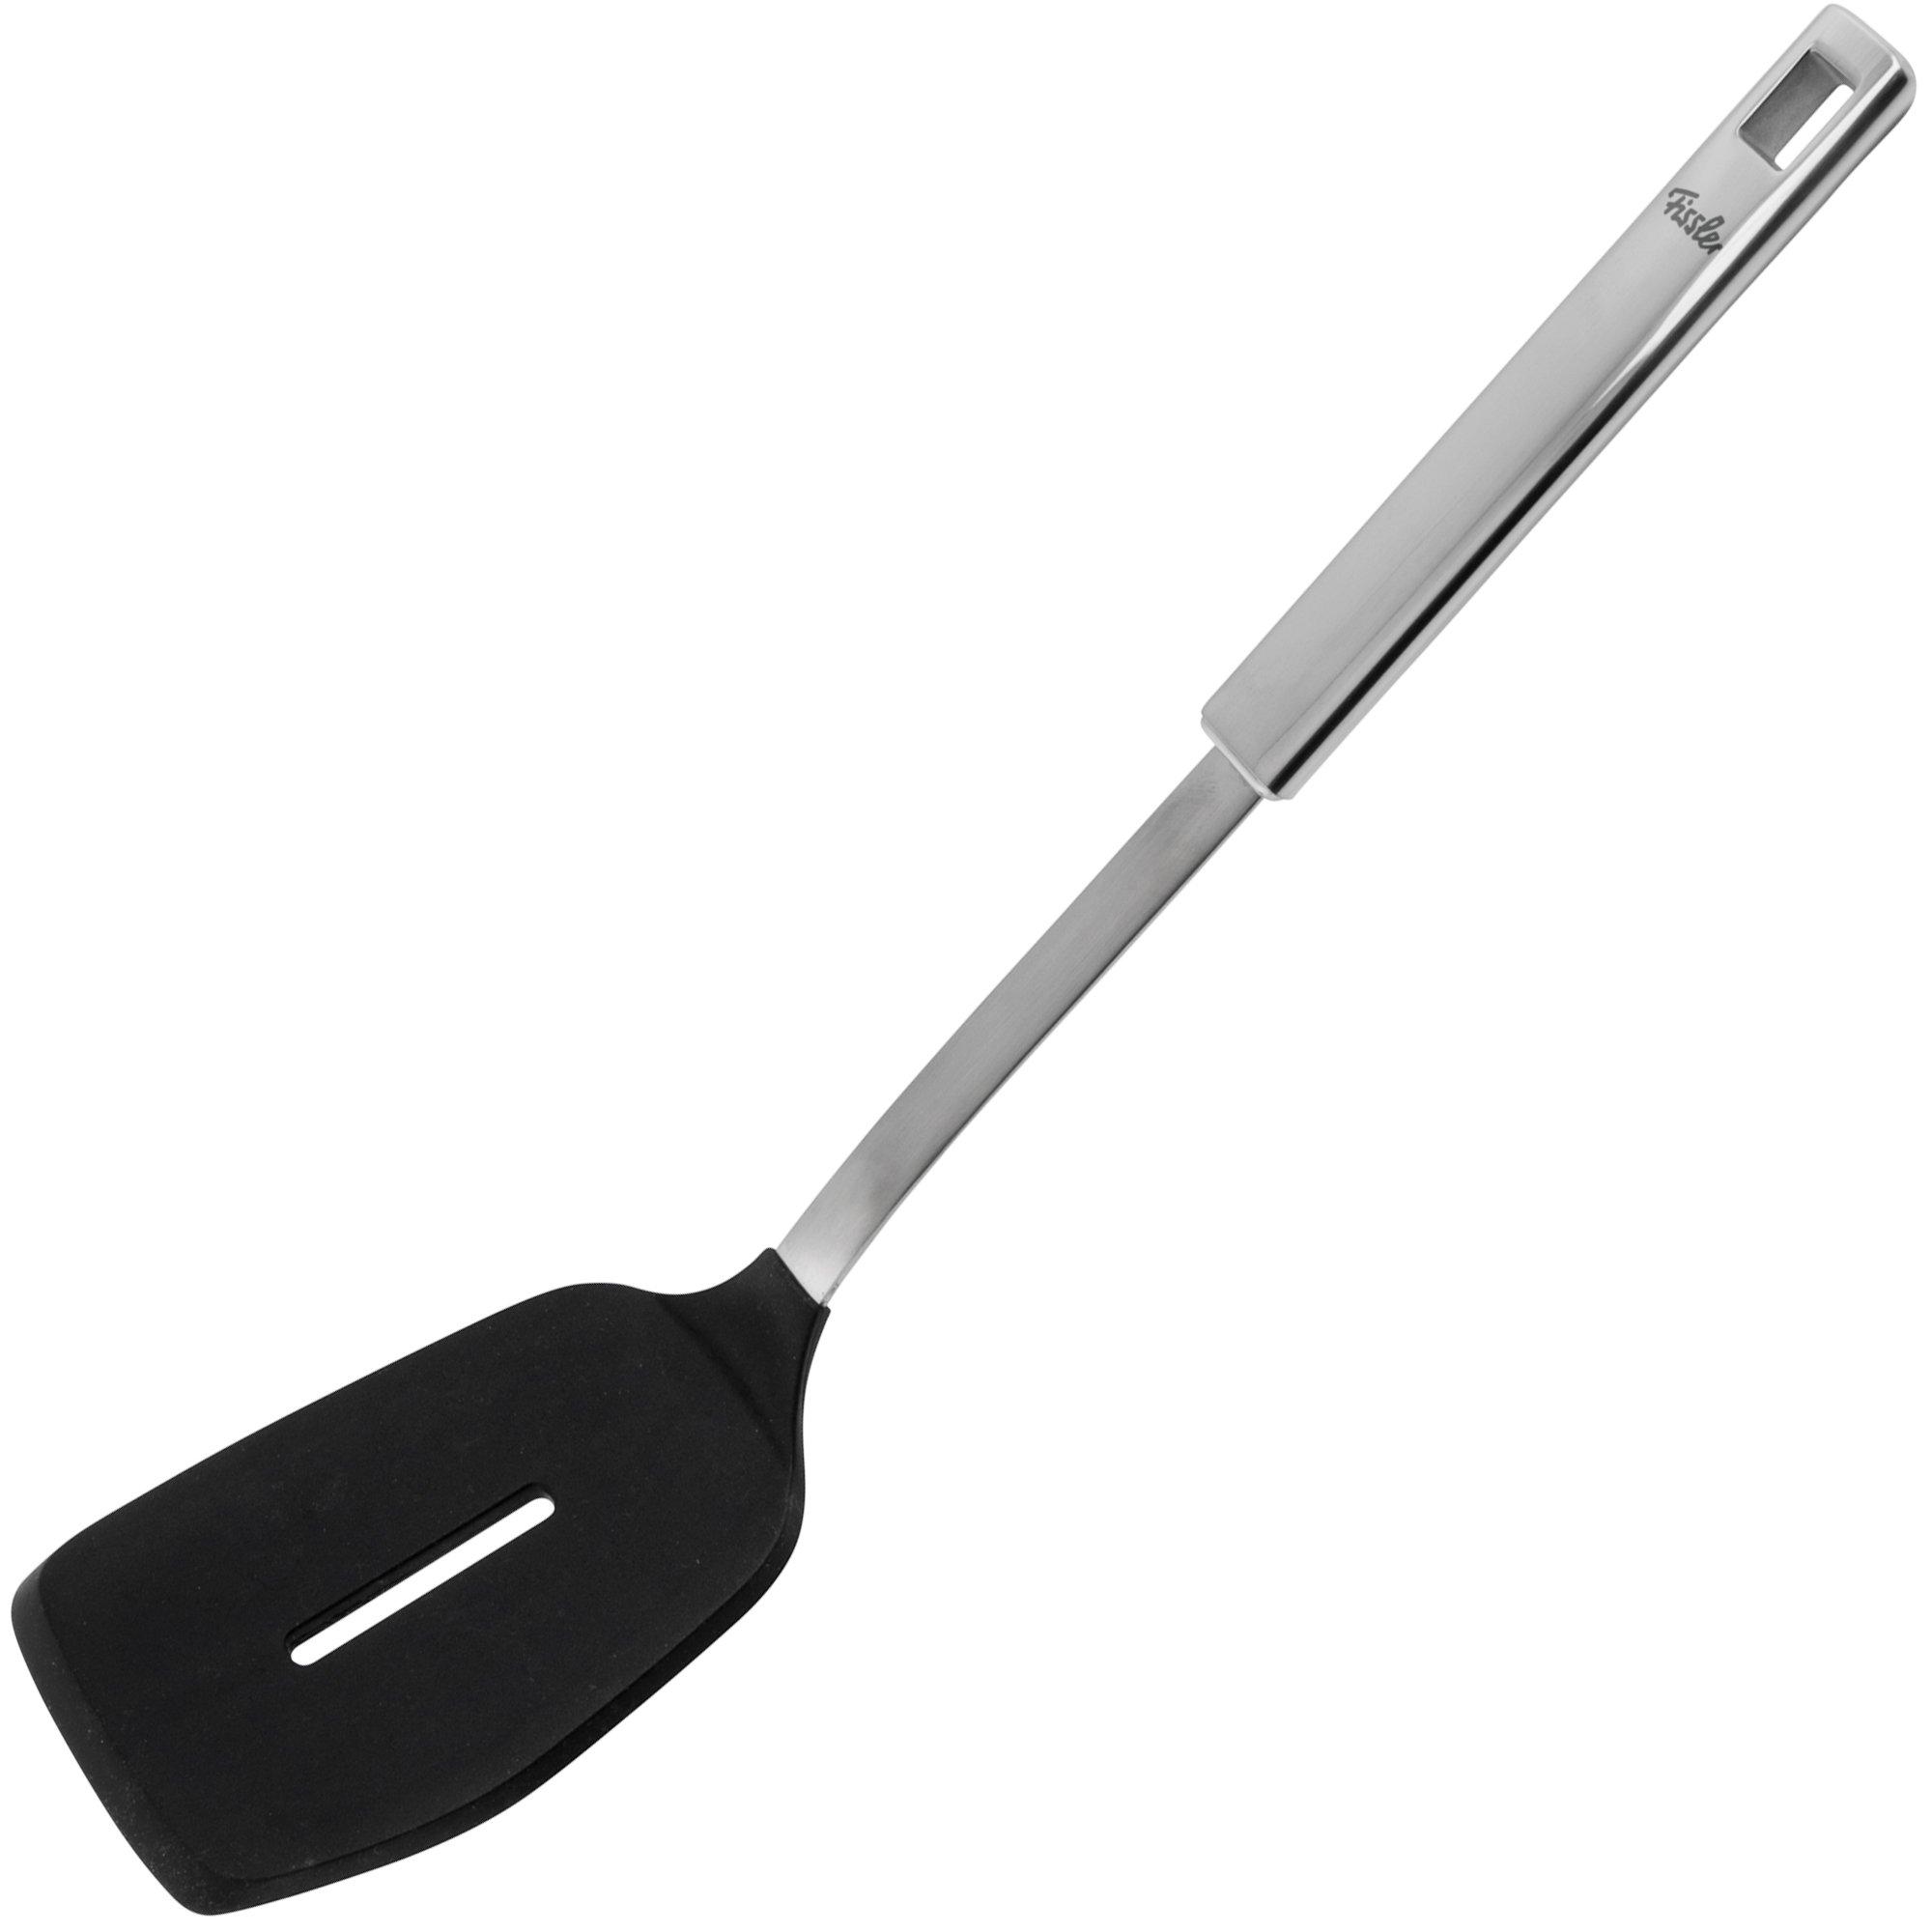 Fissler Original-Profi Collection Silicon Turner 084-018-10-000-0 silicone spatula